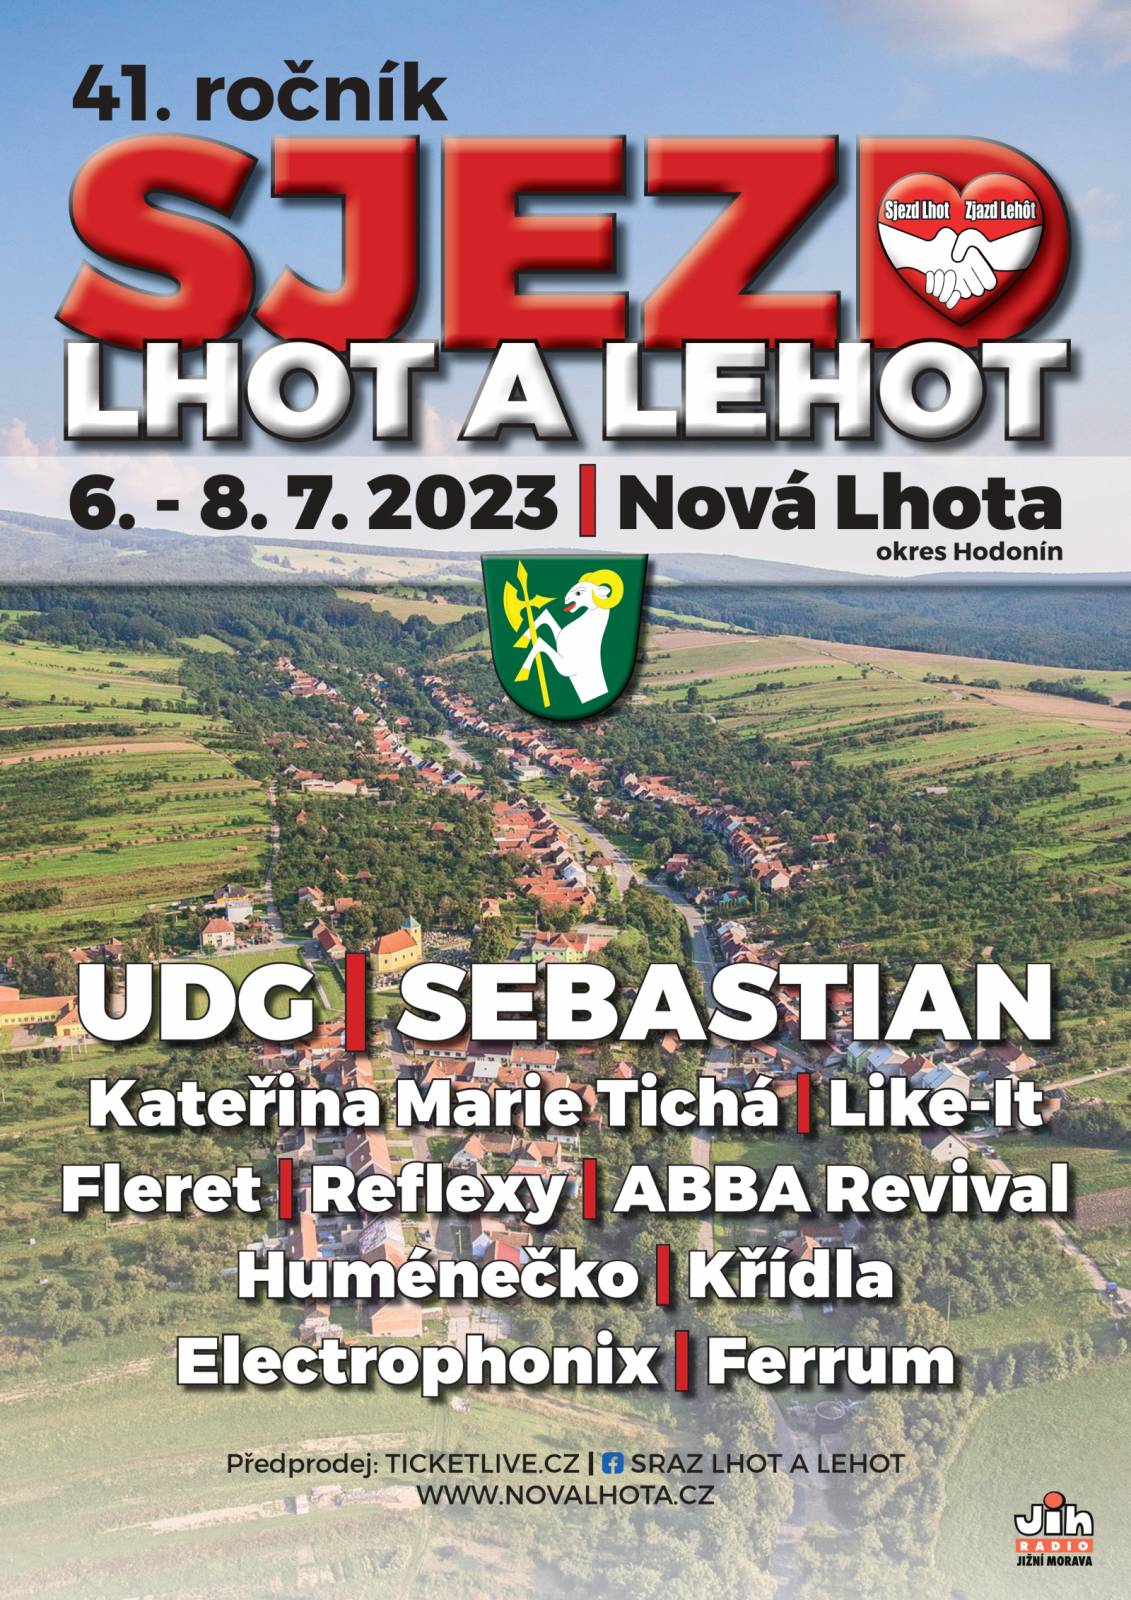 Putovní festival Sjezd Lhot a Lehot dorazí na jižní Moravu. Zahrají UDG, Sebastian, Kateřina Marie Tichá nebo Reflexy